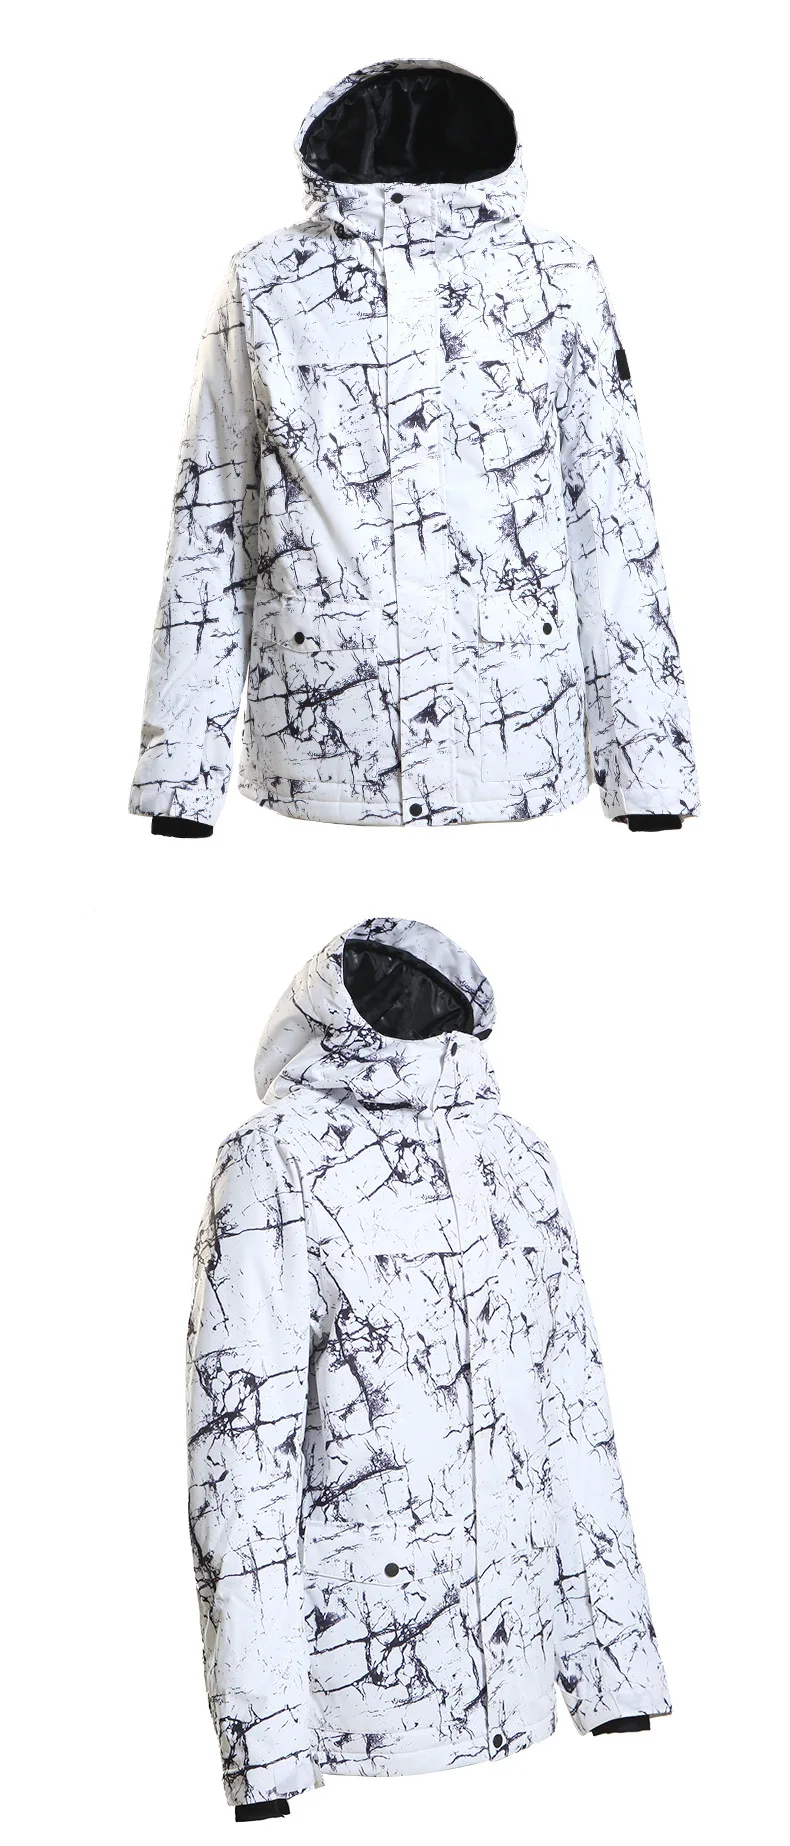 SMN дешевле высокого качества мужской и женский зимний костюм куртка зимняя спортивная одежда для улицы Куртки для сноубординга 10K водонепроницаемый ветрозащитный дышащий Лыжный костюм